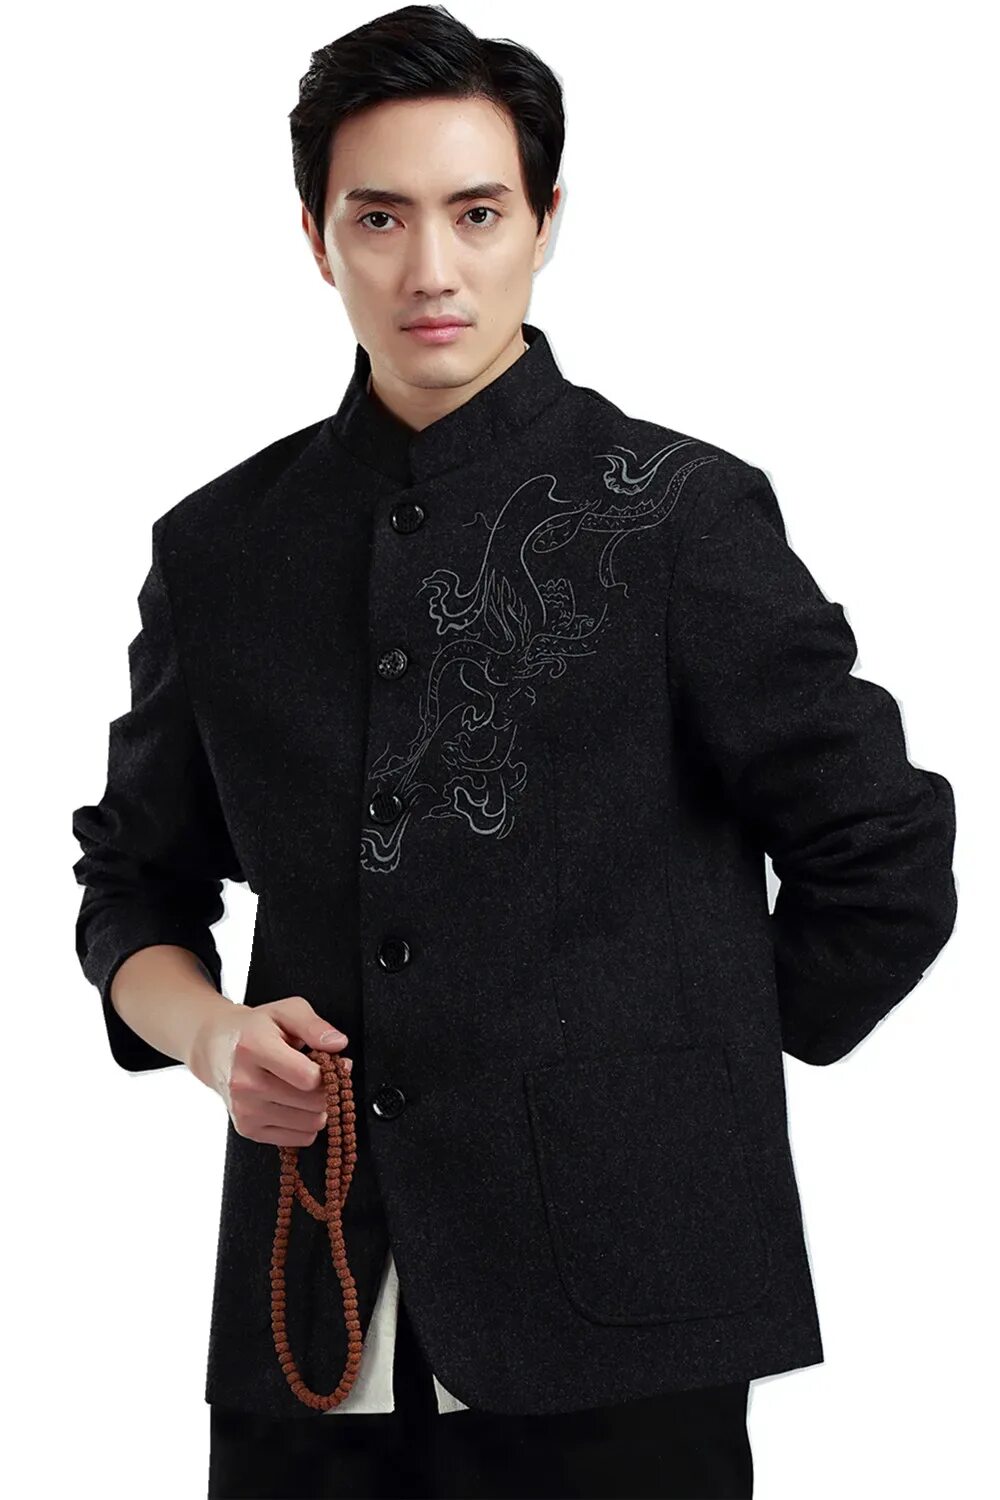 Купить мужскую китайскую. Чаншань китайская мужская одежда. Традиционный китайский костюм мужской. Китайский традиционный пиджак. Китайское мужское платье.